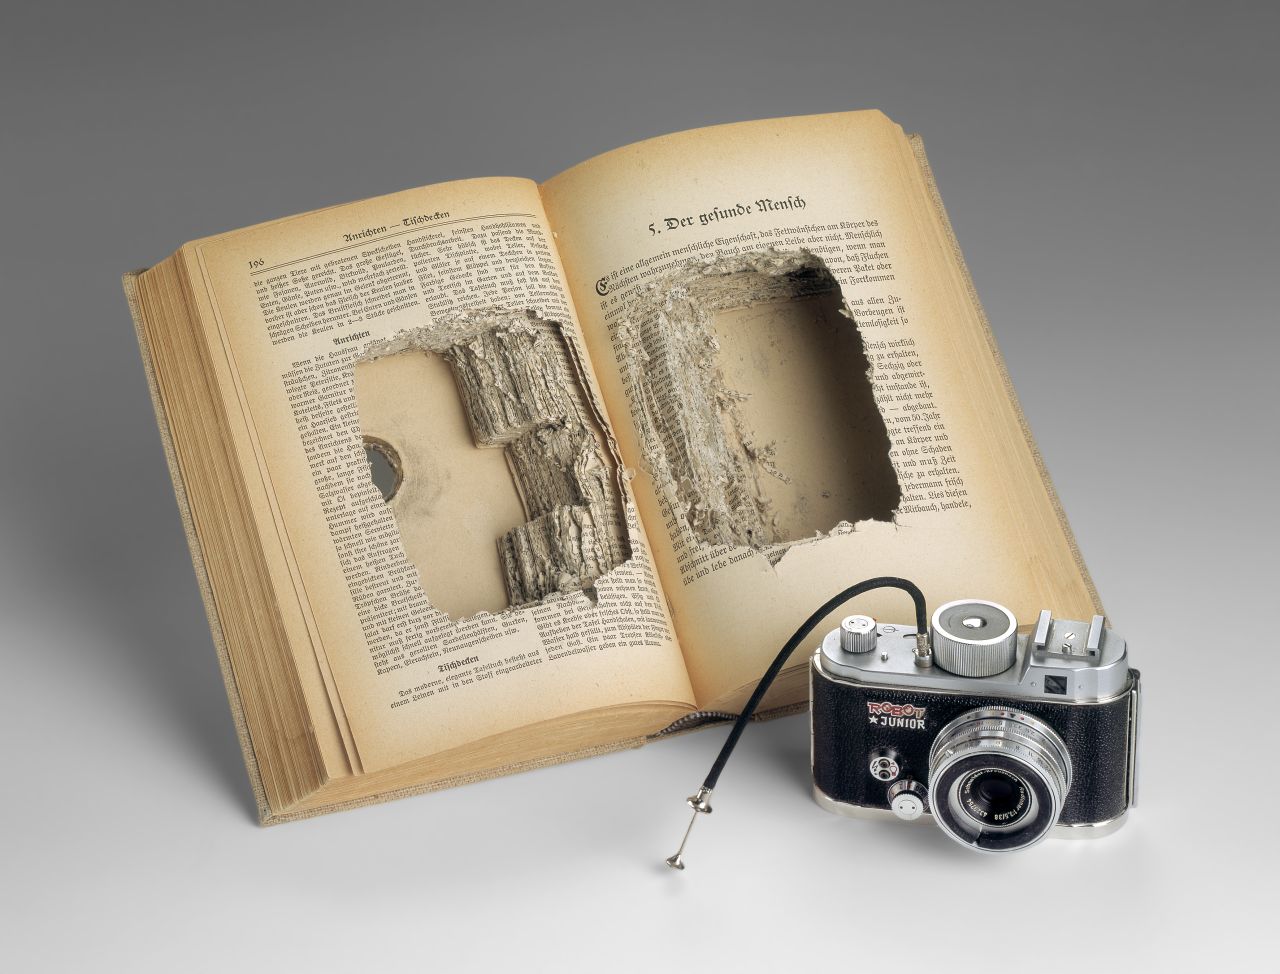 Aufgeschlagenes, schräg aufgestelltes Buch, Seitenblock mittig ausgehöhlt; Loch im vorderen Buchdeckel. Vor dem Buch steht eine Kamera mit Fernauslöser und der Aufschrift 'Robot Junior'.